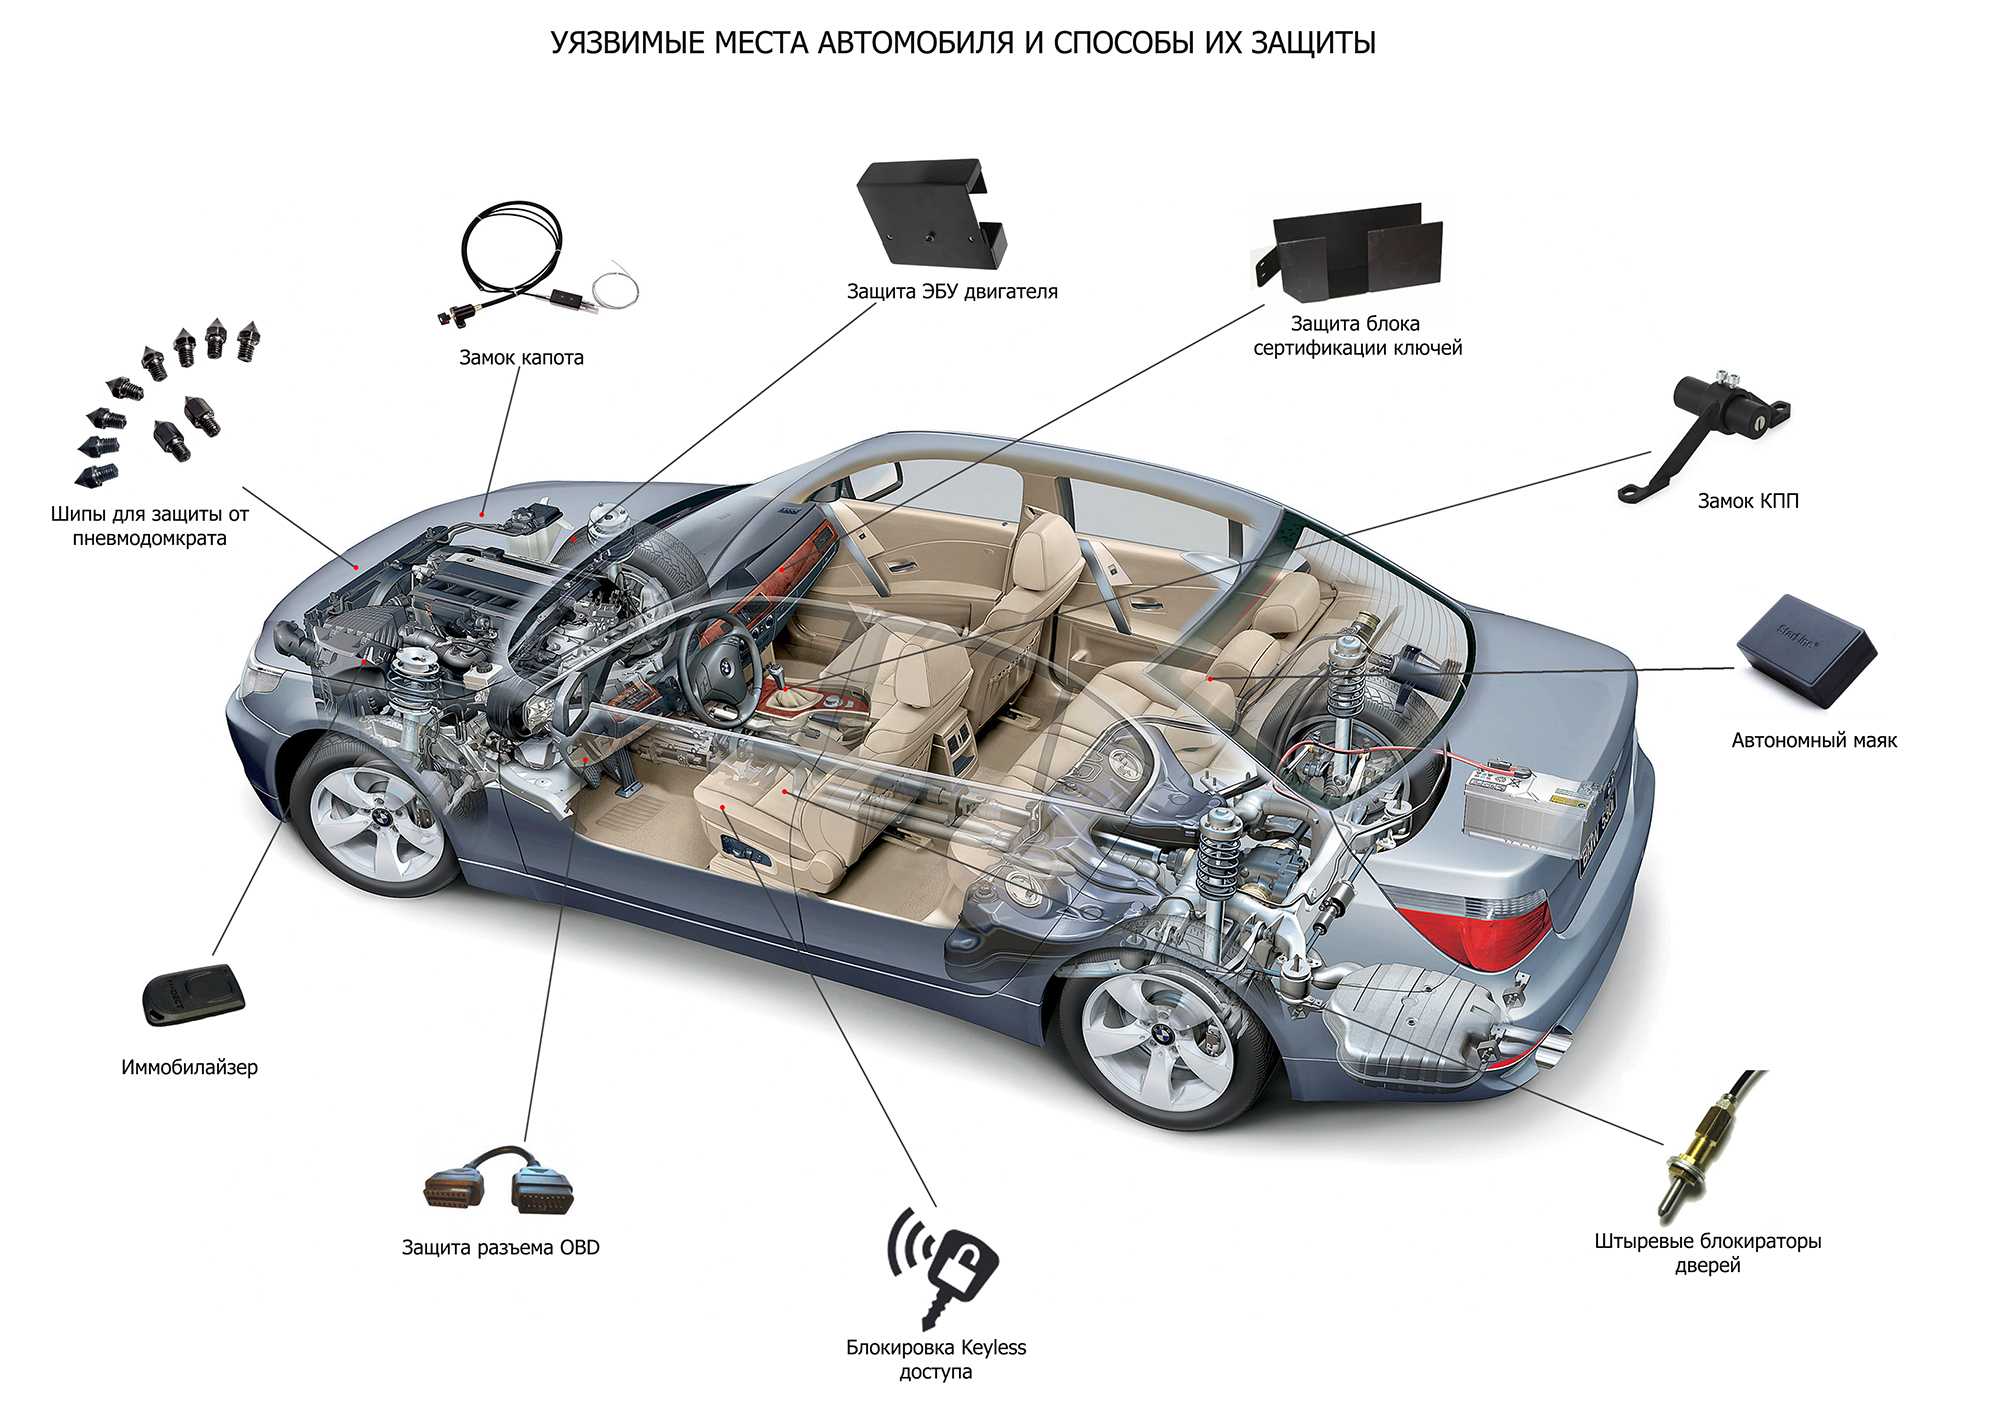 Механическая защита от угона автомобиля: рейтинг противоугонных систем